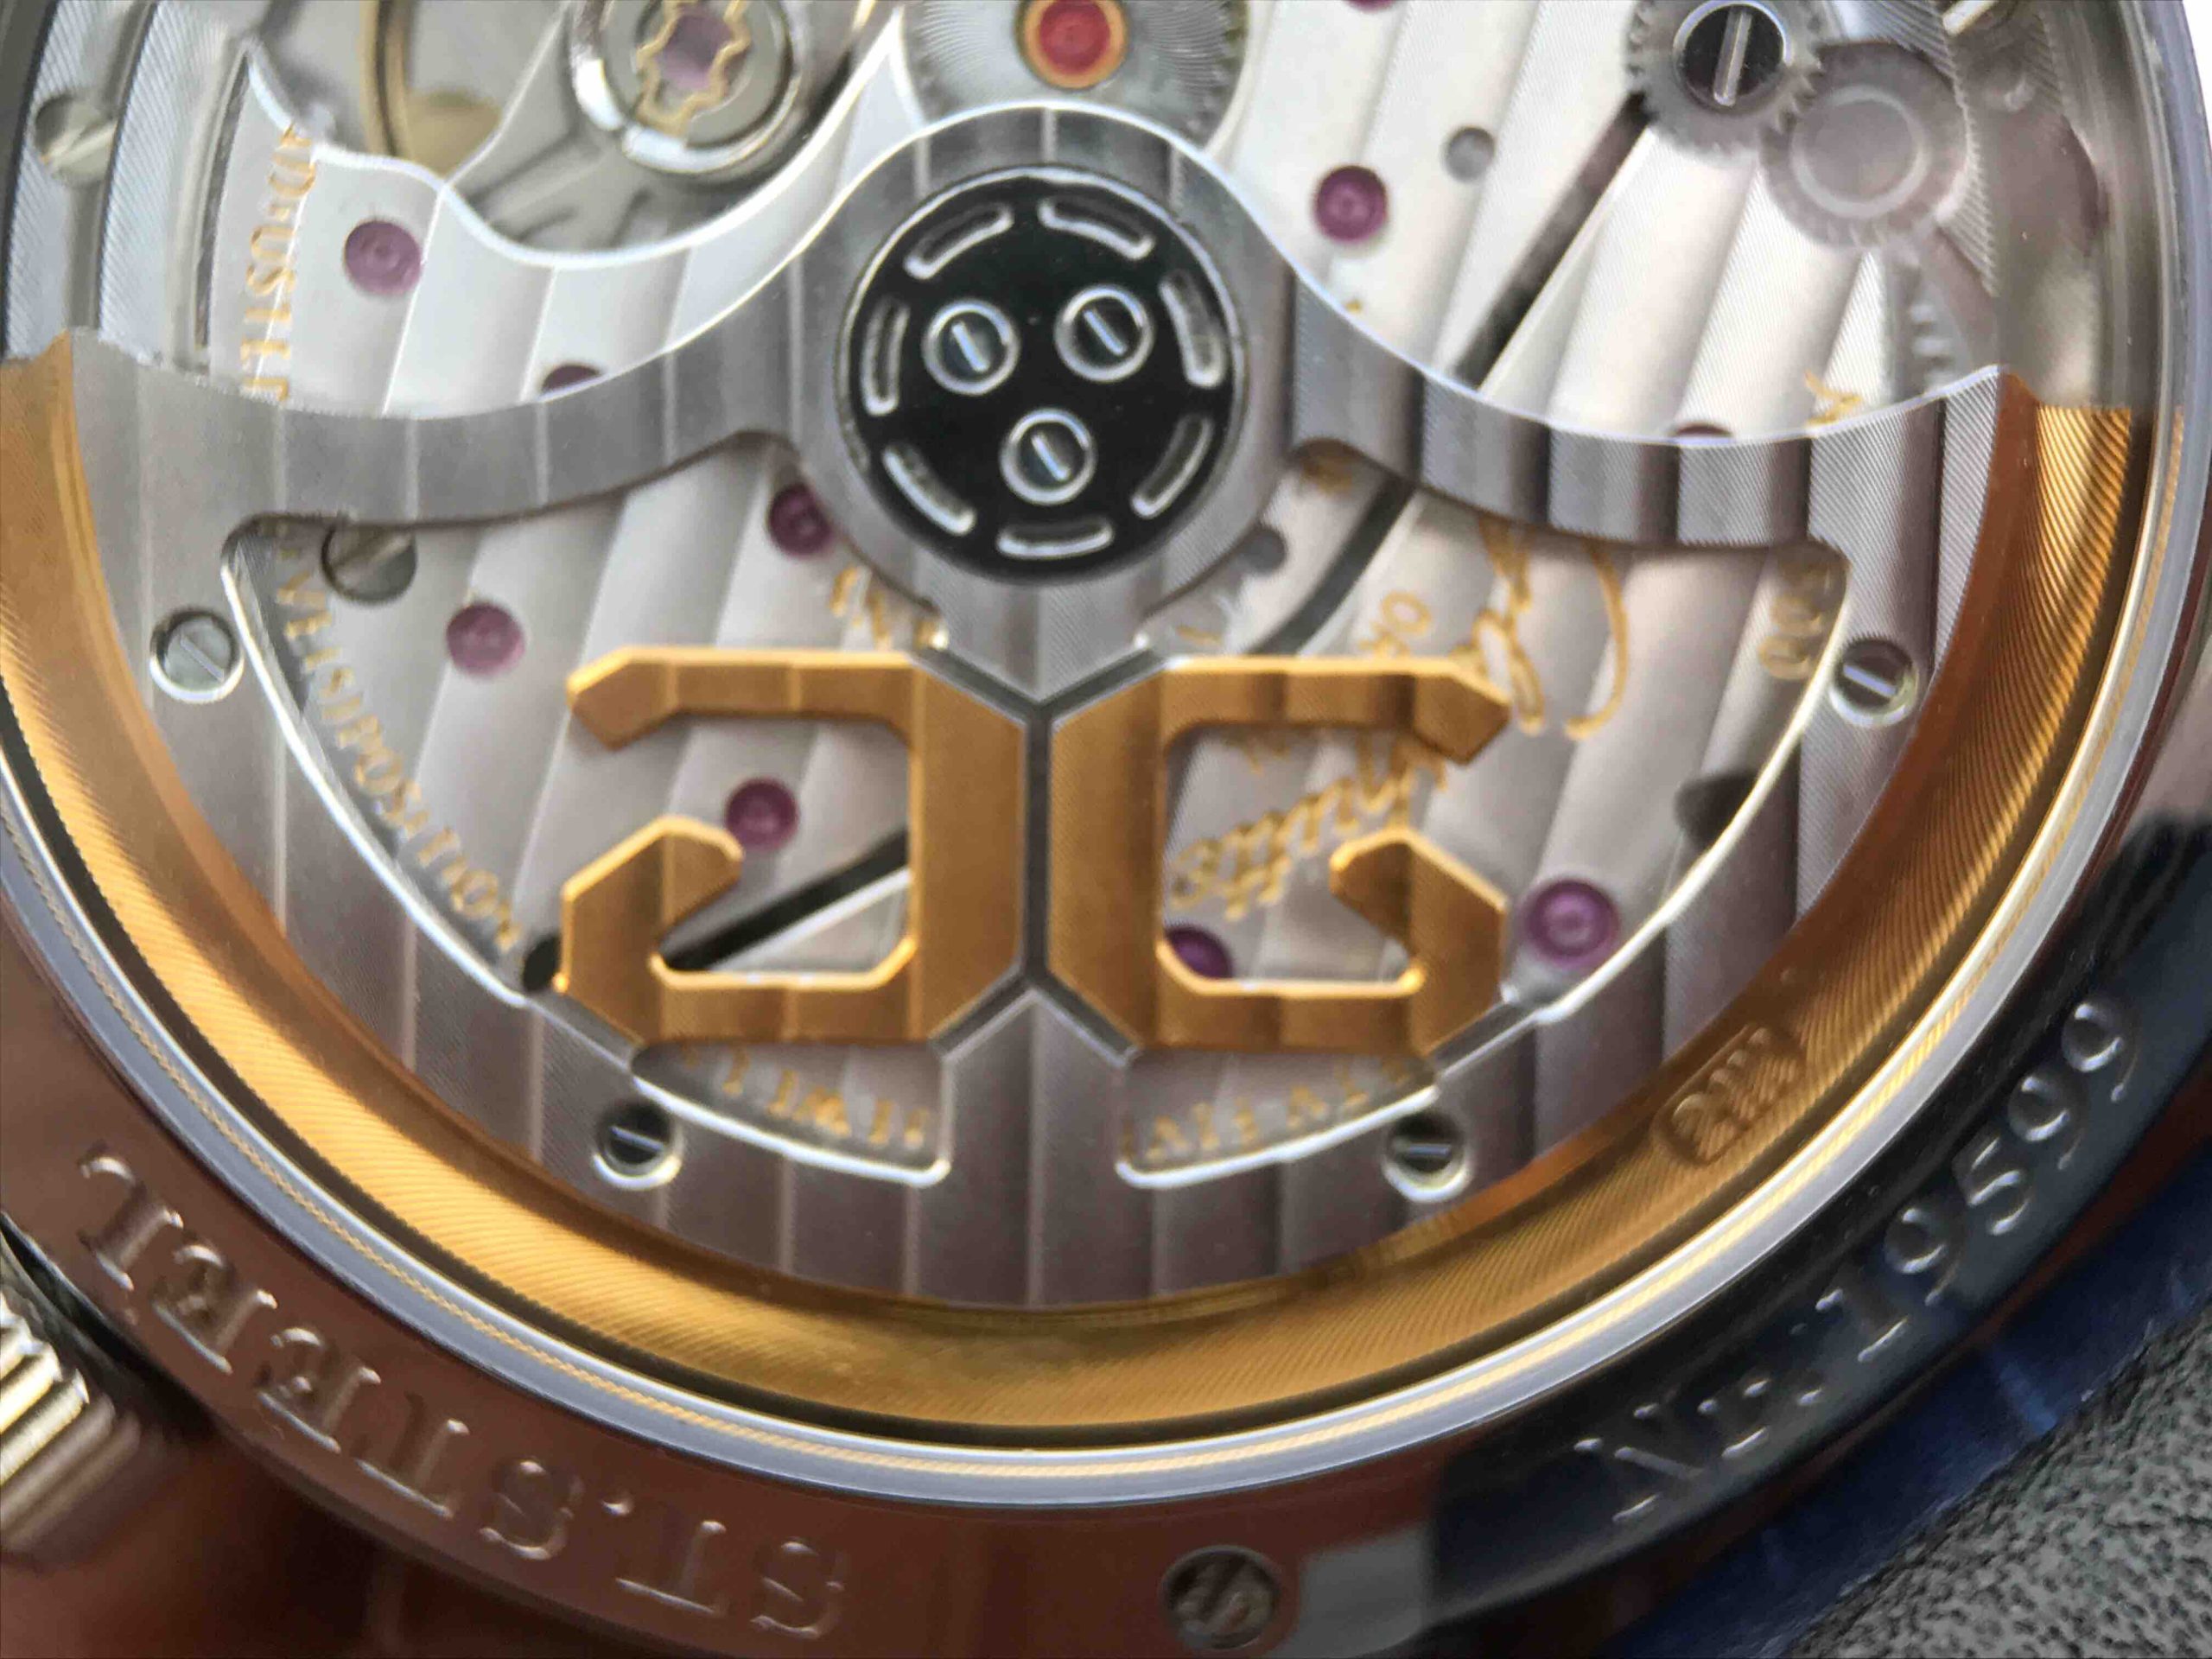 2023033103510220 scaled - 復刻手錶格拉蘇蒂手錶價格及圖片 GF格拉蘇蒂原創議員大日歴月相100-04-32-12-04￥2780